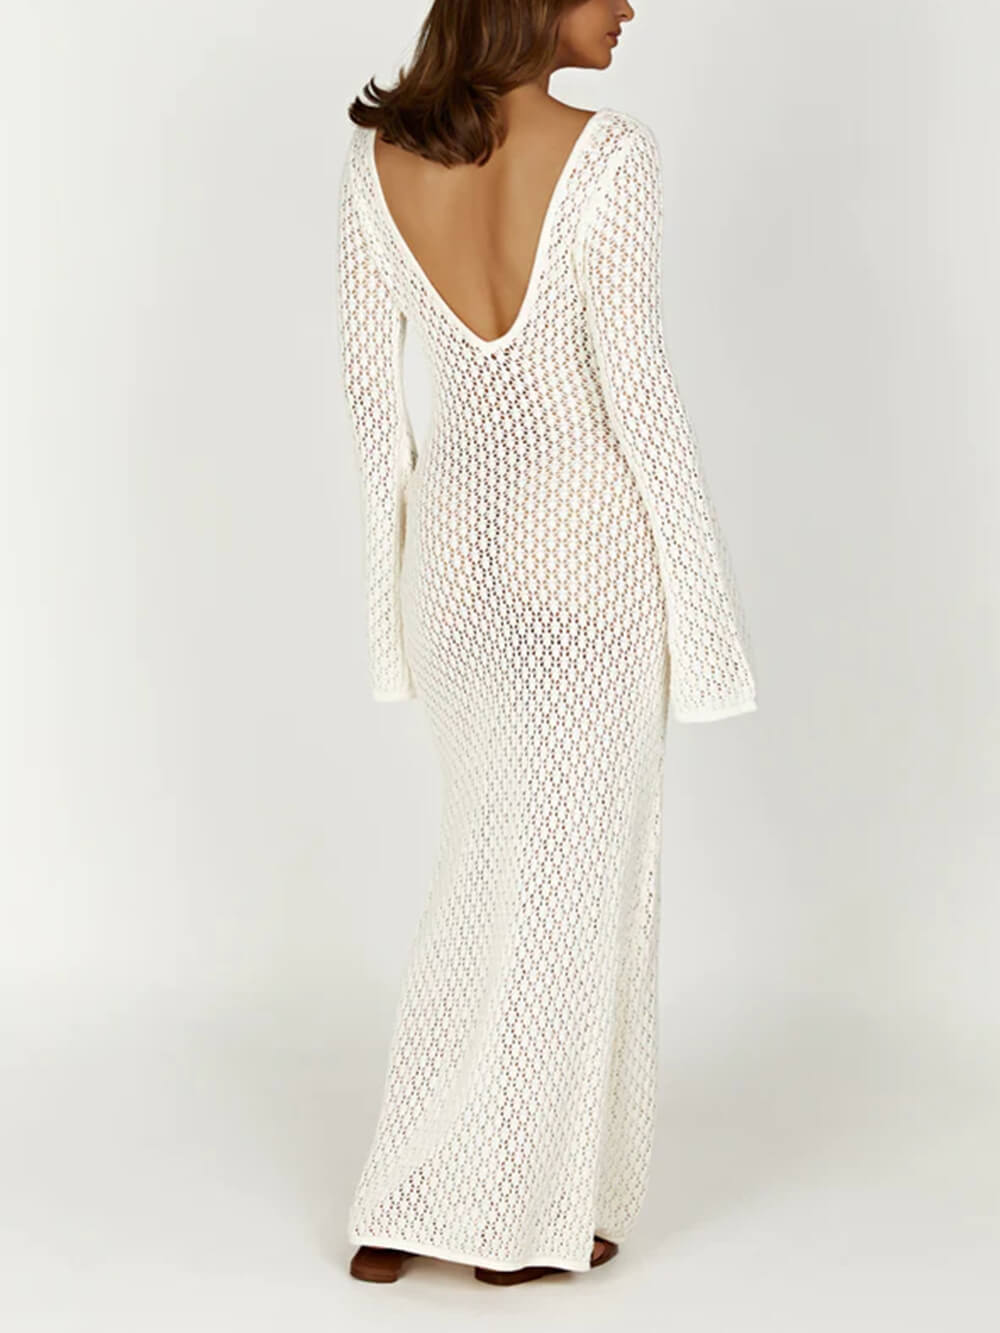 Μαξι φόρεμα με βελονάκι Fishtail Flare Sleeve